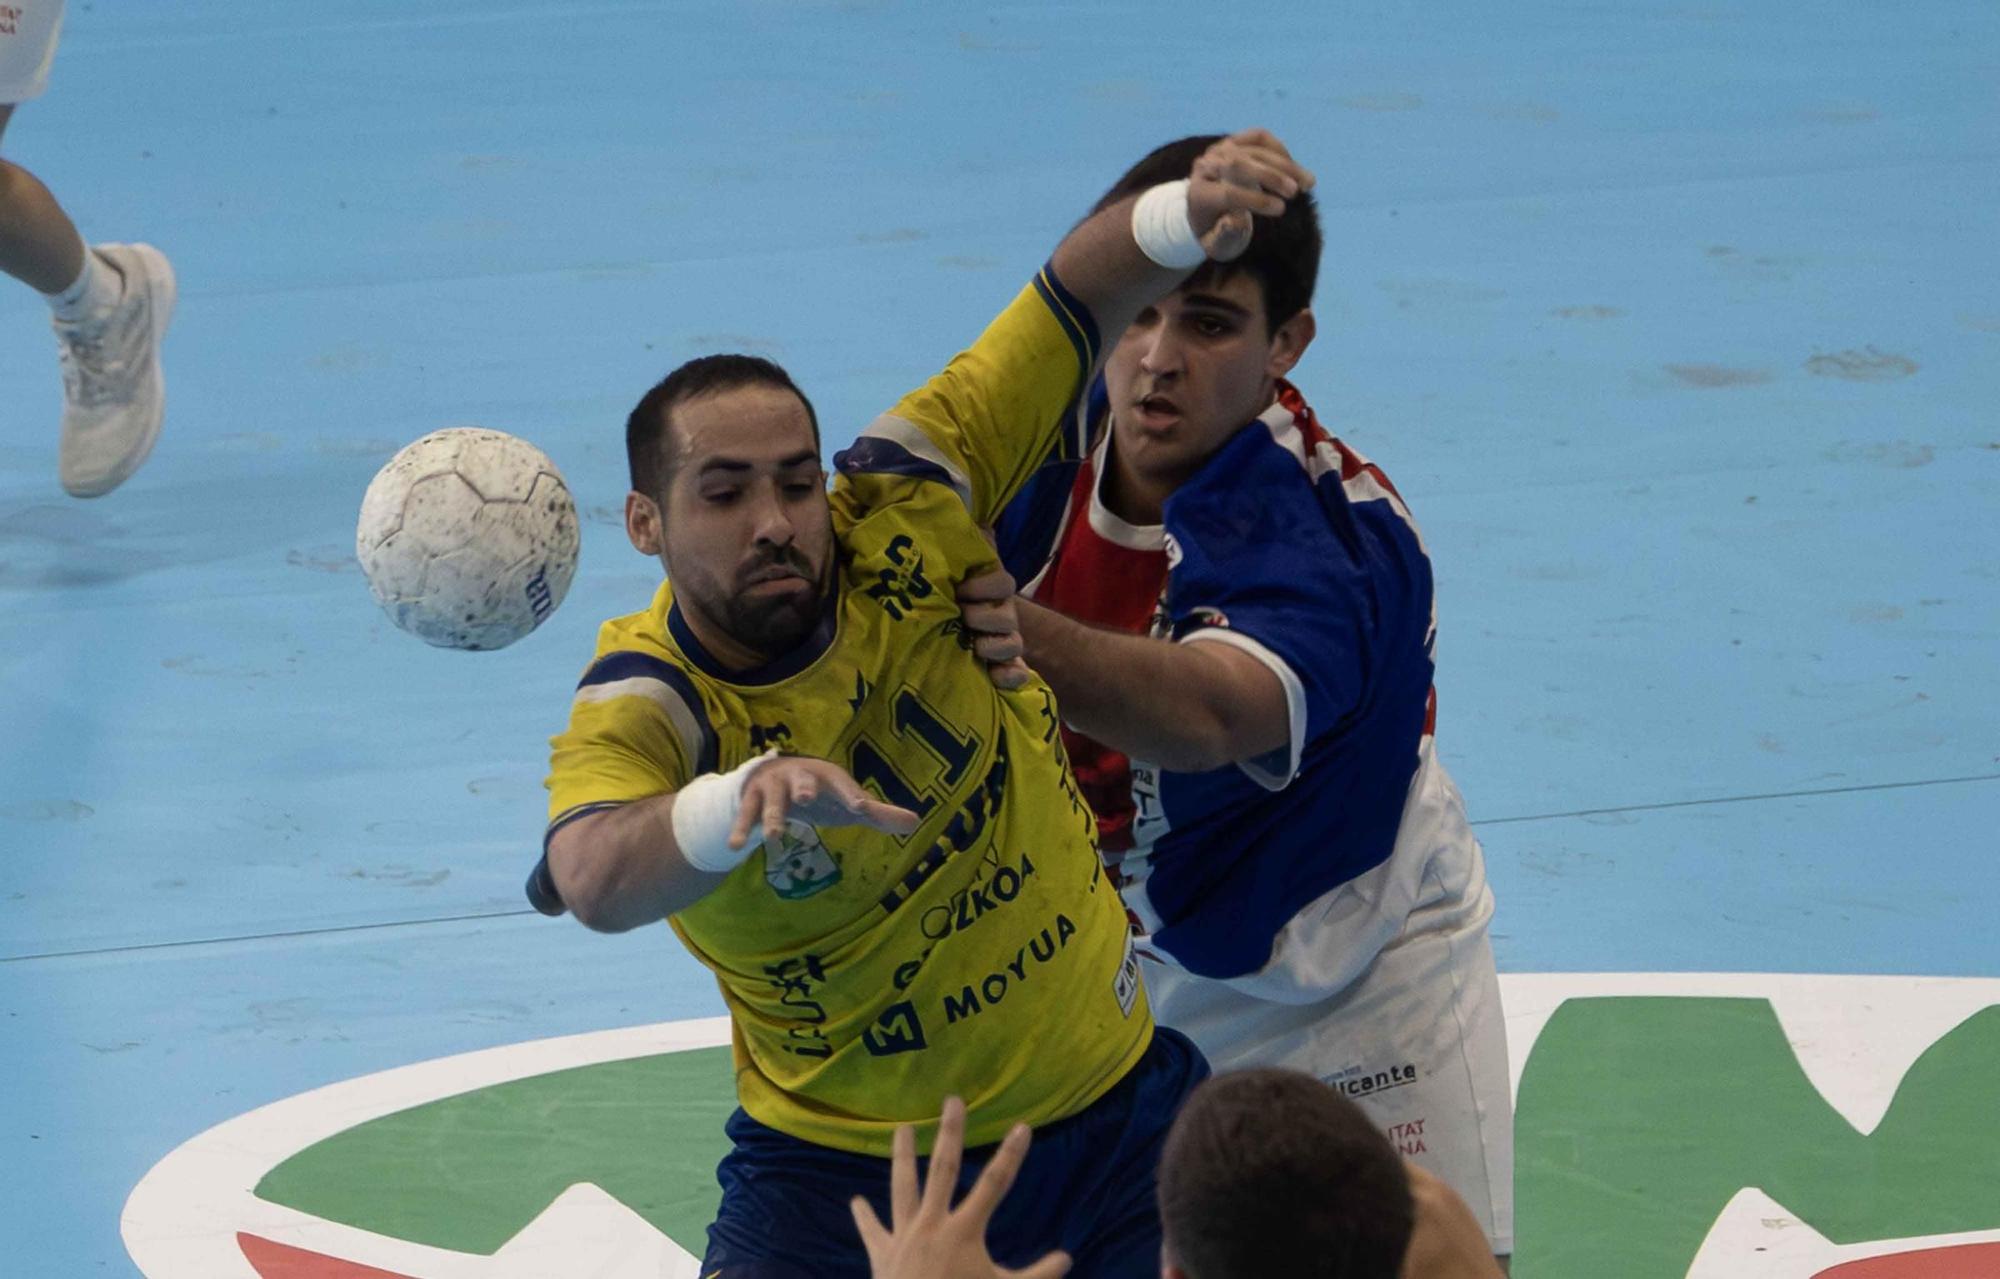 Balonmano Agustinos de Alicante cae en la Copa ante el Bidasoa de Irún